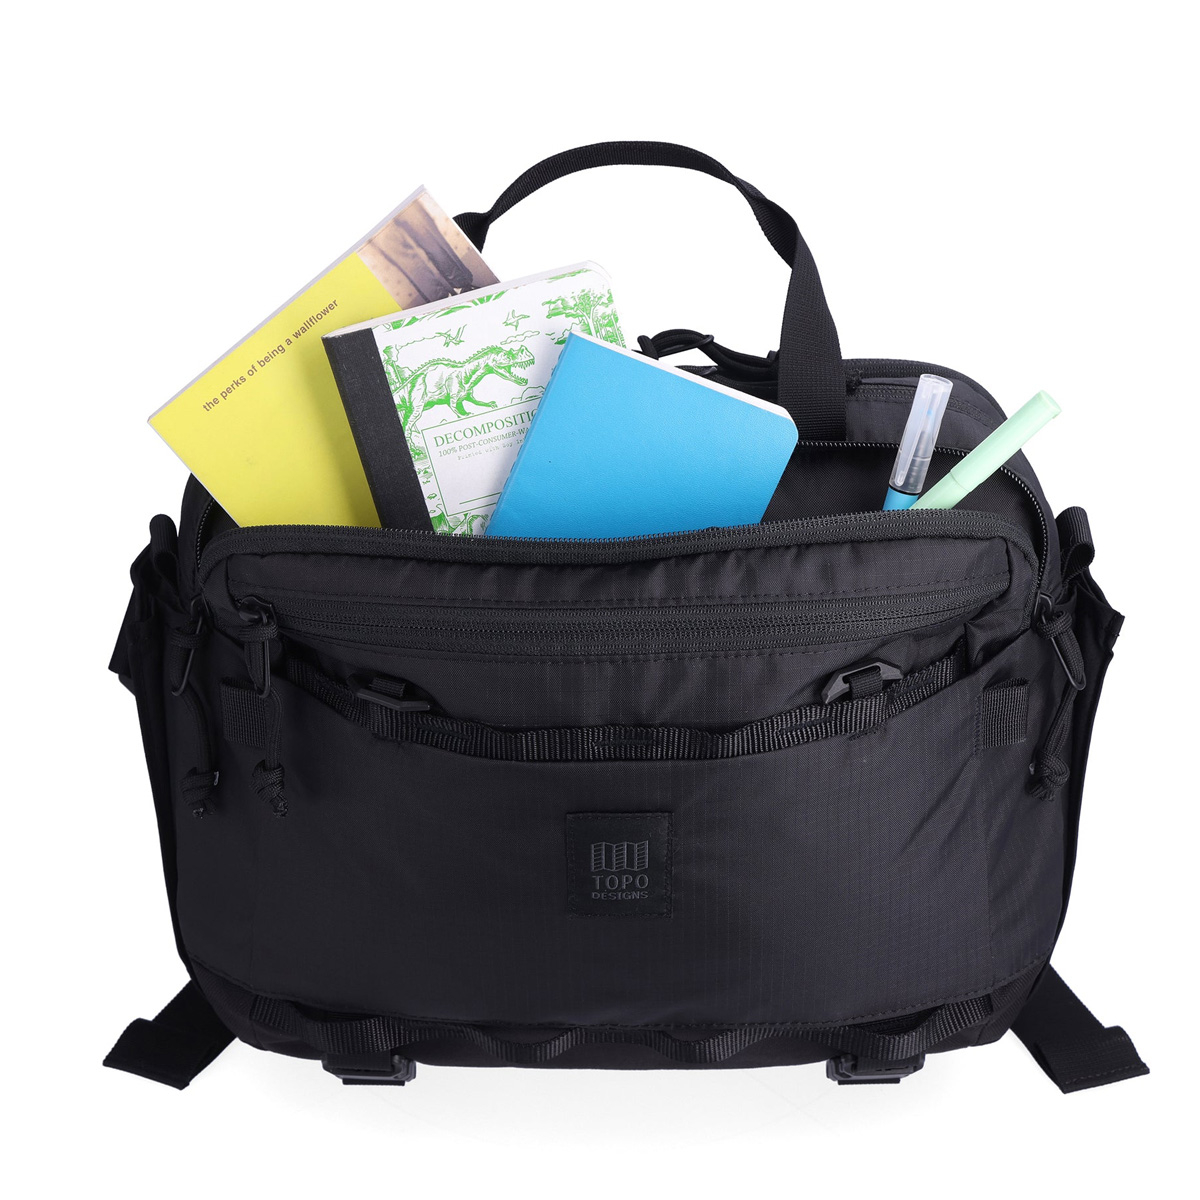 Topo Designs Mountain Cross Bag Black, ideale Slingtasche im Messenger-Stil für den täglichen Gebrauch und vieles mehr